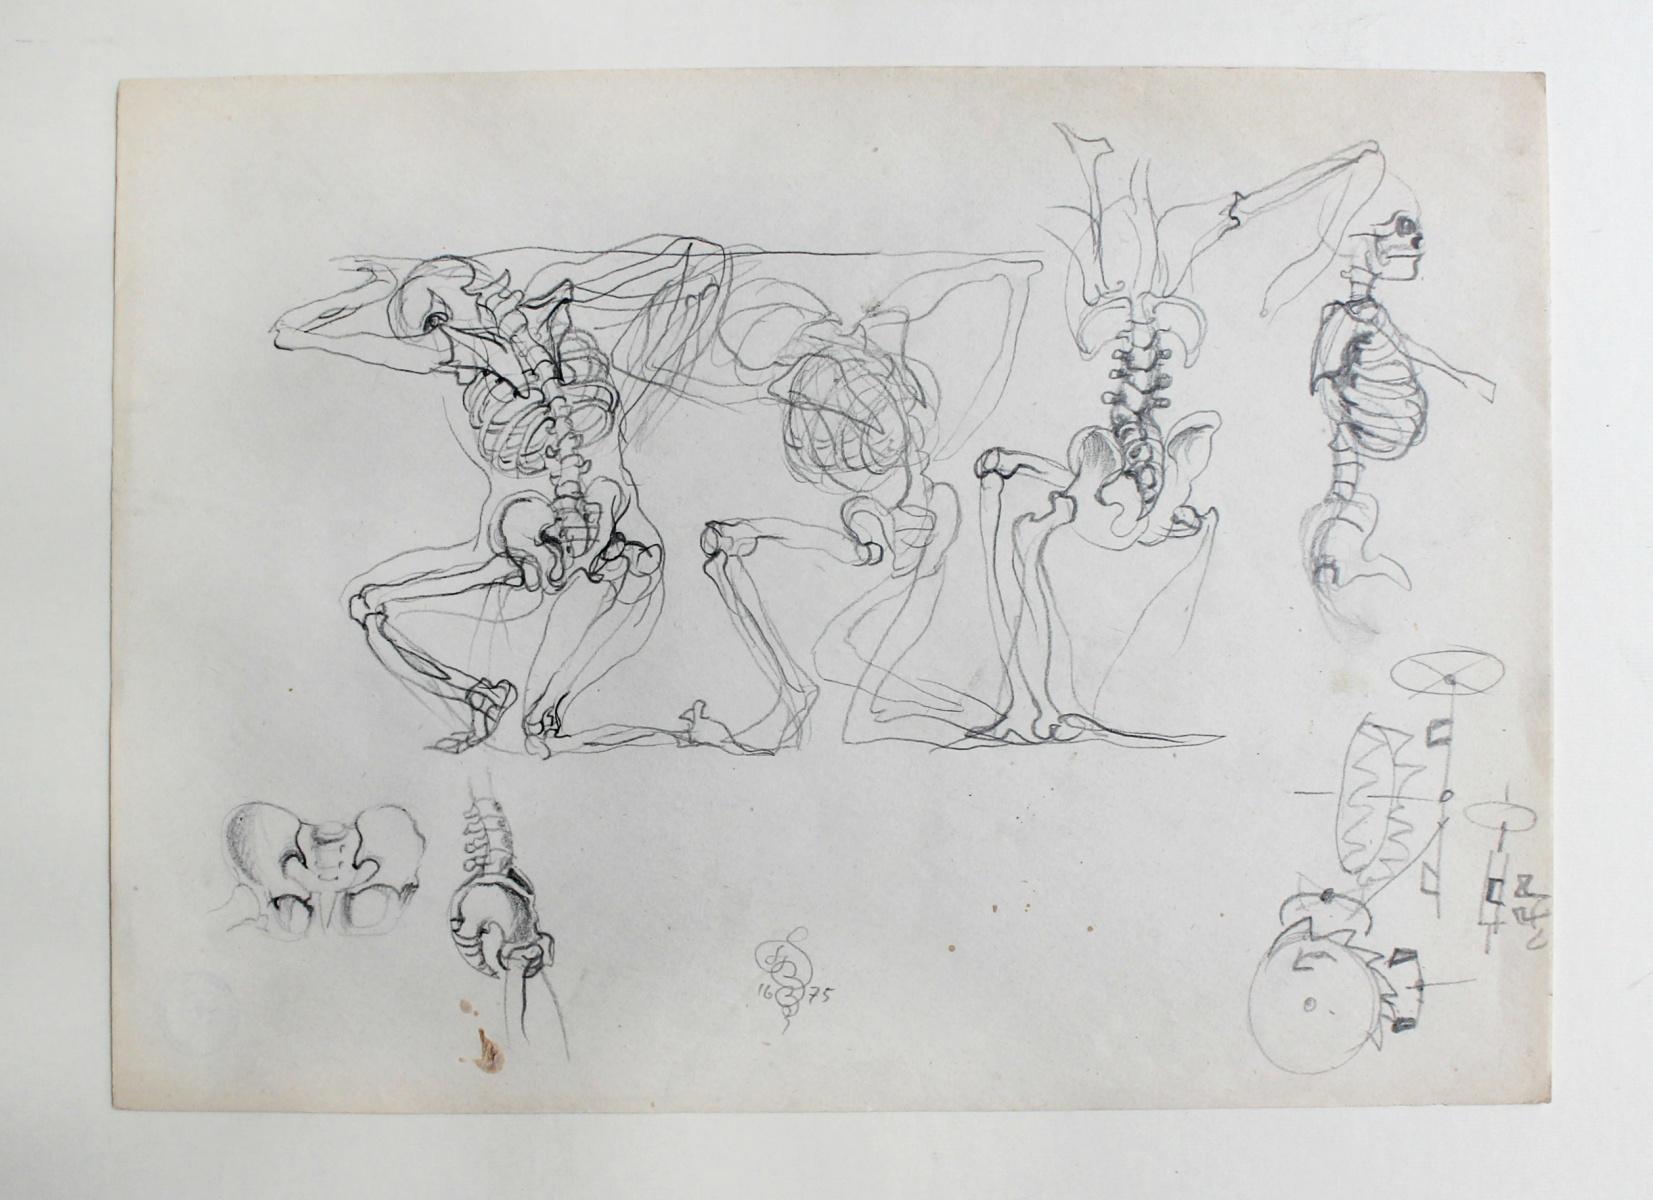 Zeichnung auf Papier, 1975

FRANCISZEK STAROWIEYSKI (geb.1930- gest.2009)
studierte Malerei an der Akademie der Schönen Künste in Krakau und Warschau (1949-1955). Er spezialisierte sich auf Plakate, Zeichnungen, Malerei, Bühnenbilder und